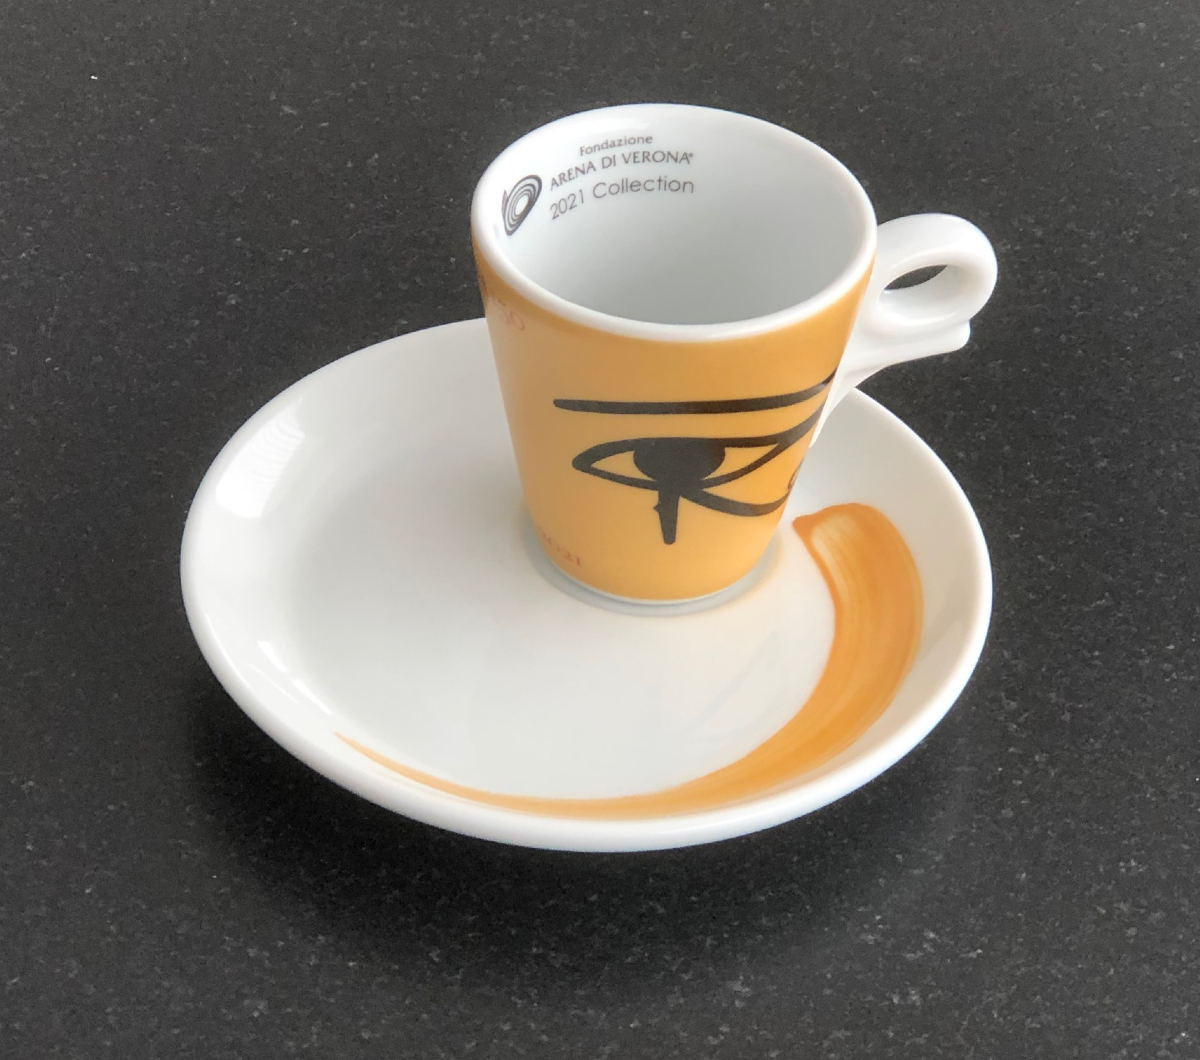 "AIDA 150th ANNIVERSARY" Espresso Cups